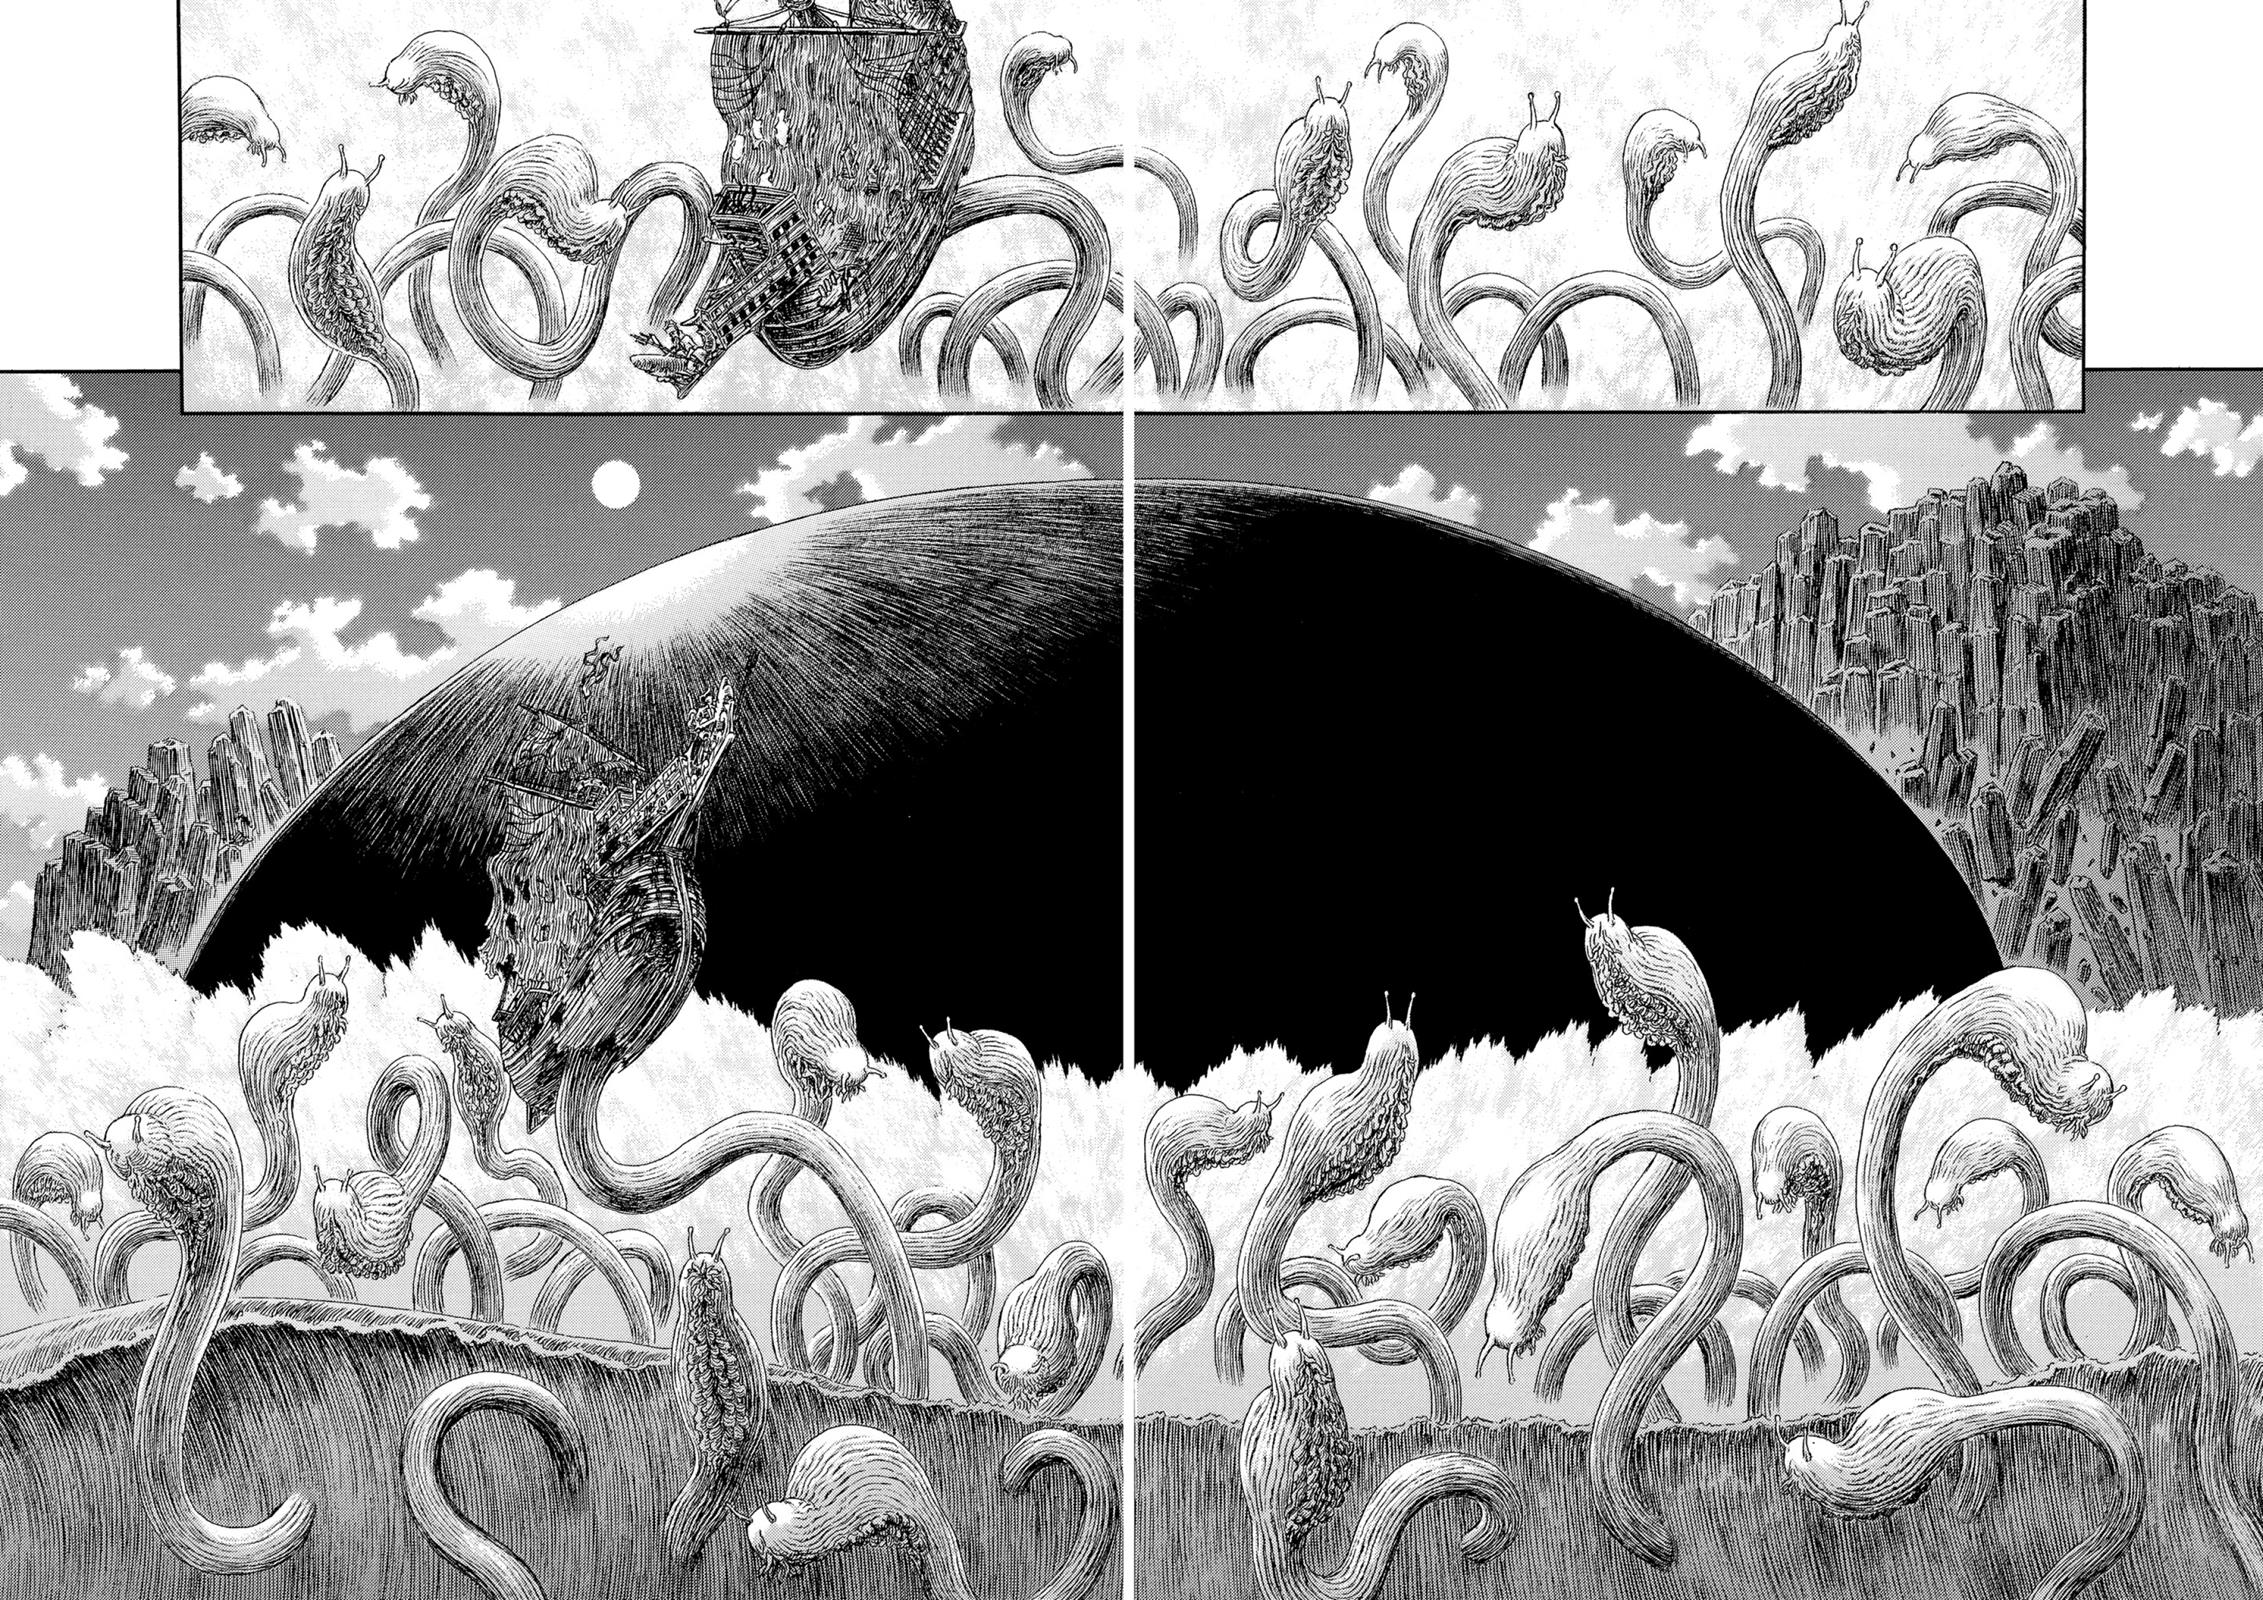 Berserk Manga Chapter 323 image 03